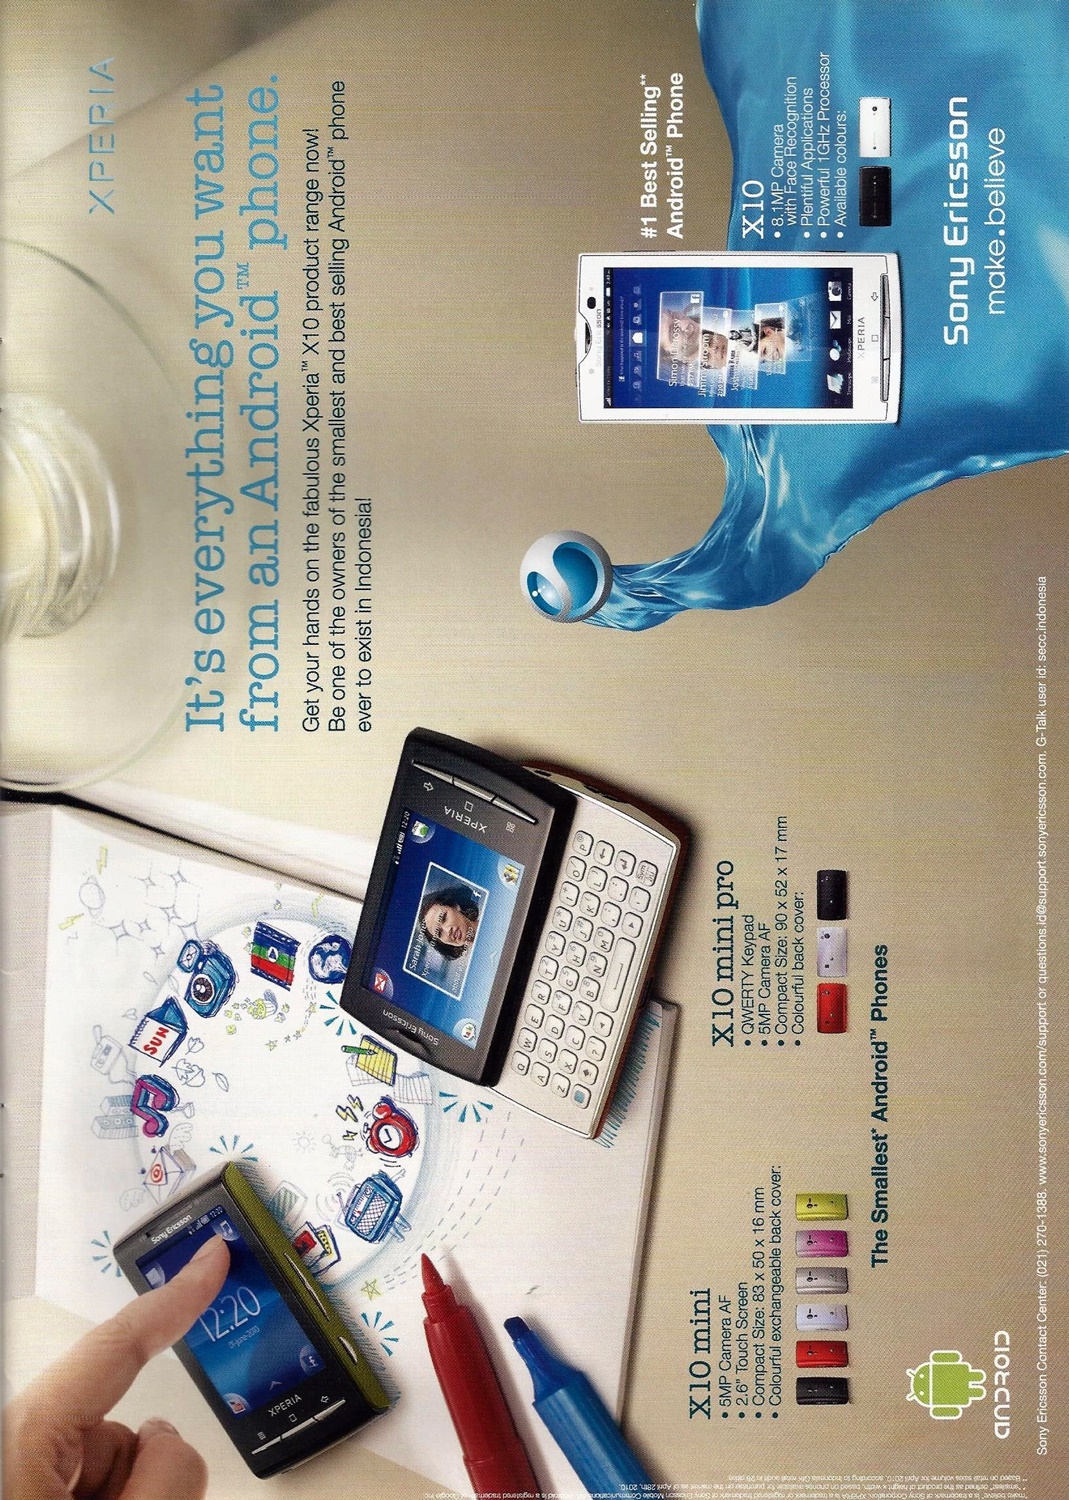 Sony Ericsson Ad